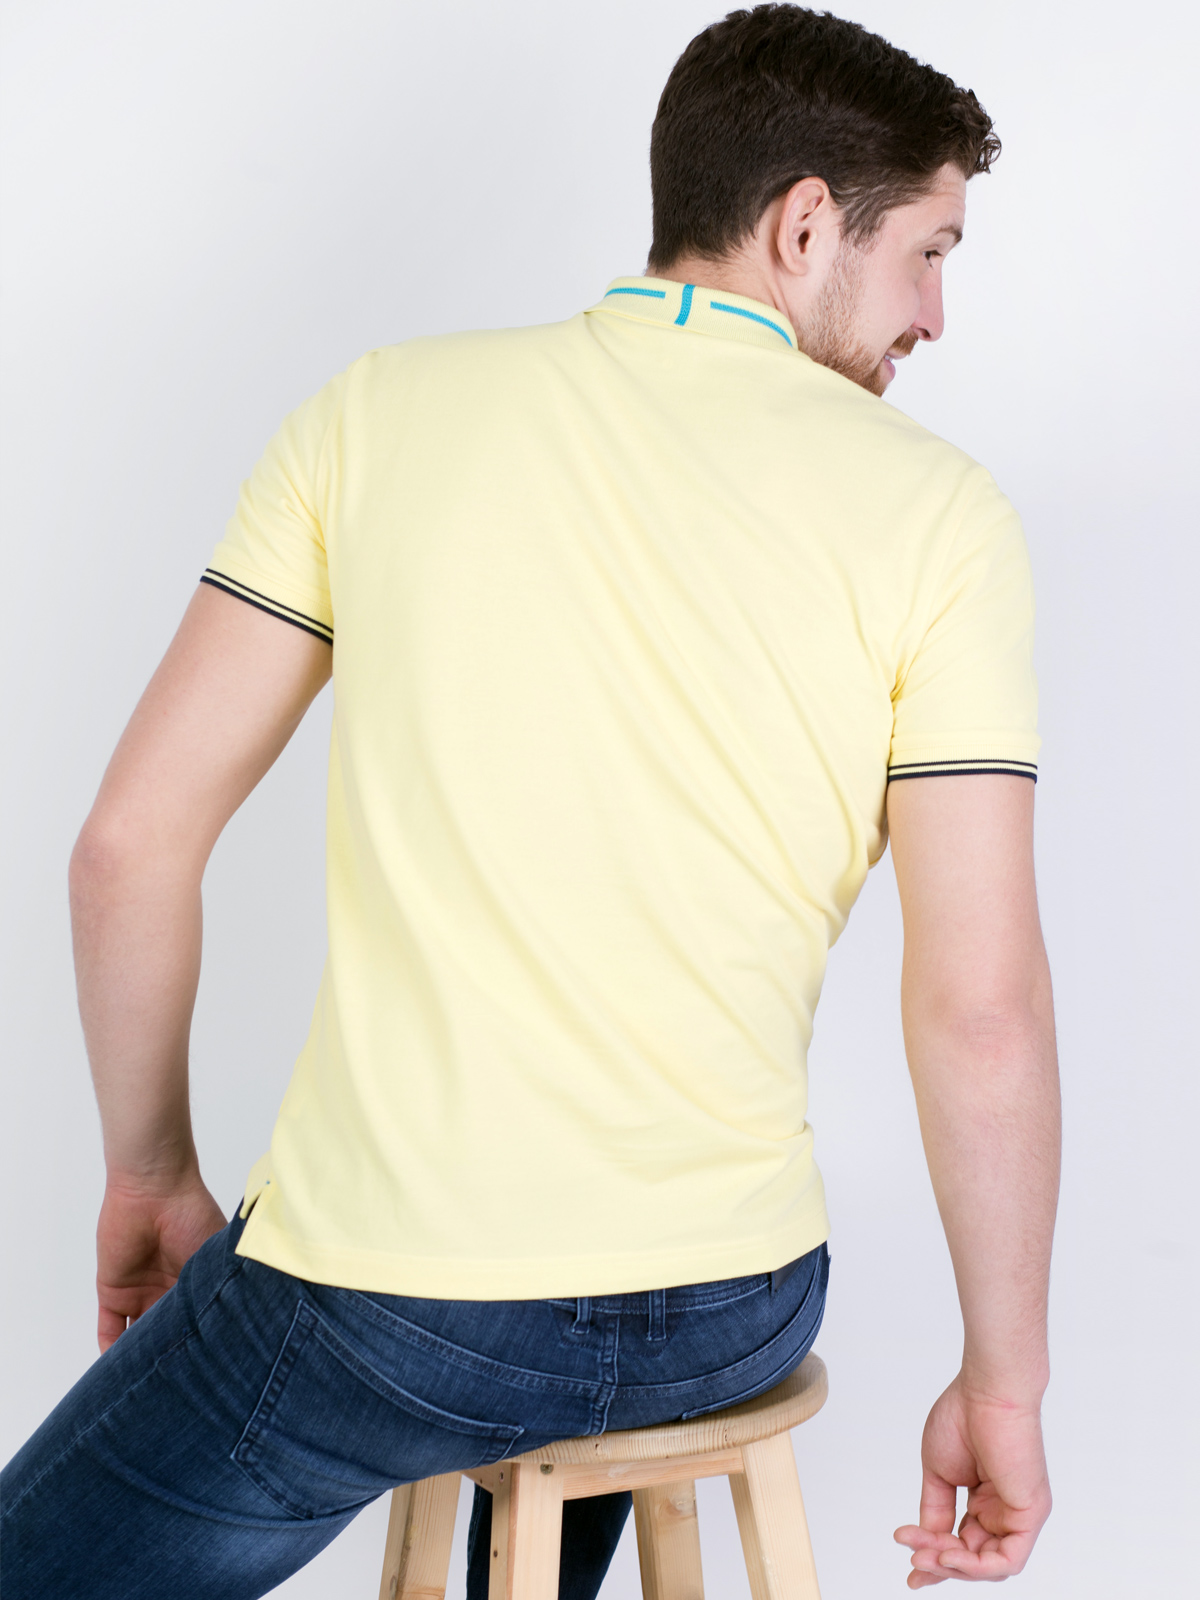 Ανοιχτό κίτρινη μπλούζα με χρωματιστά σ - 93405 € 21.93 img4